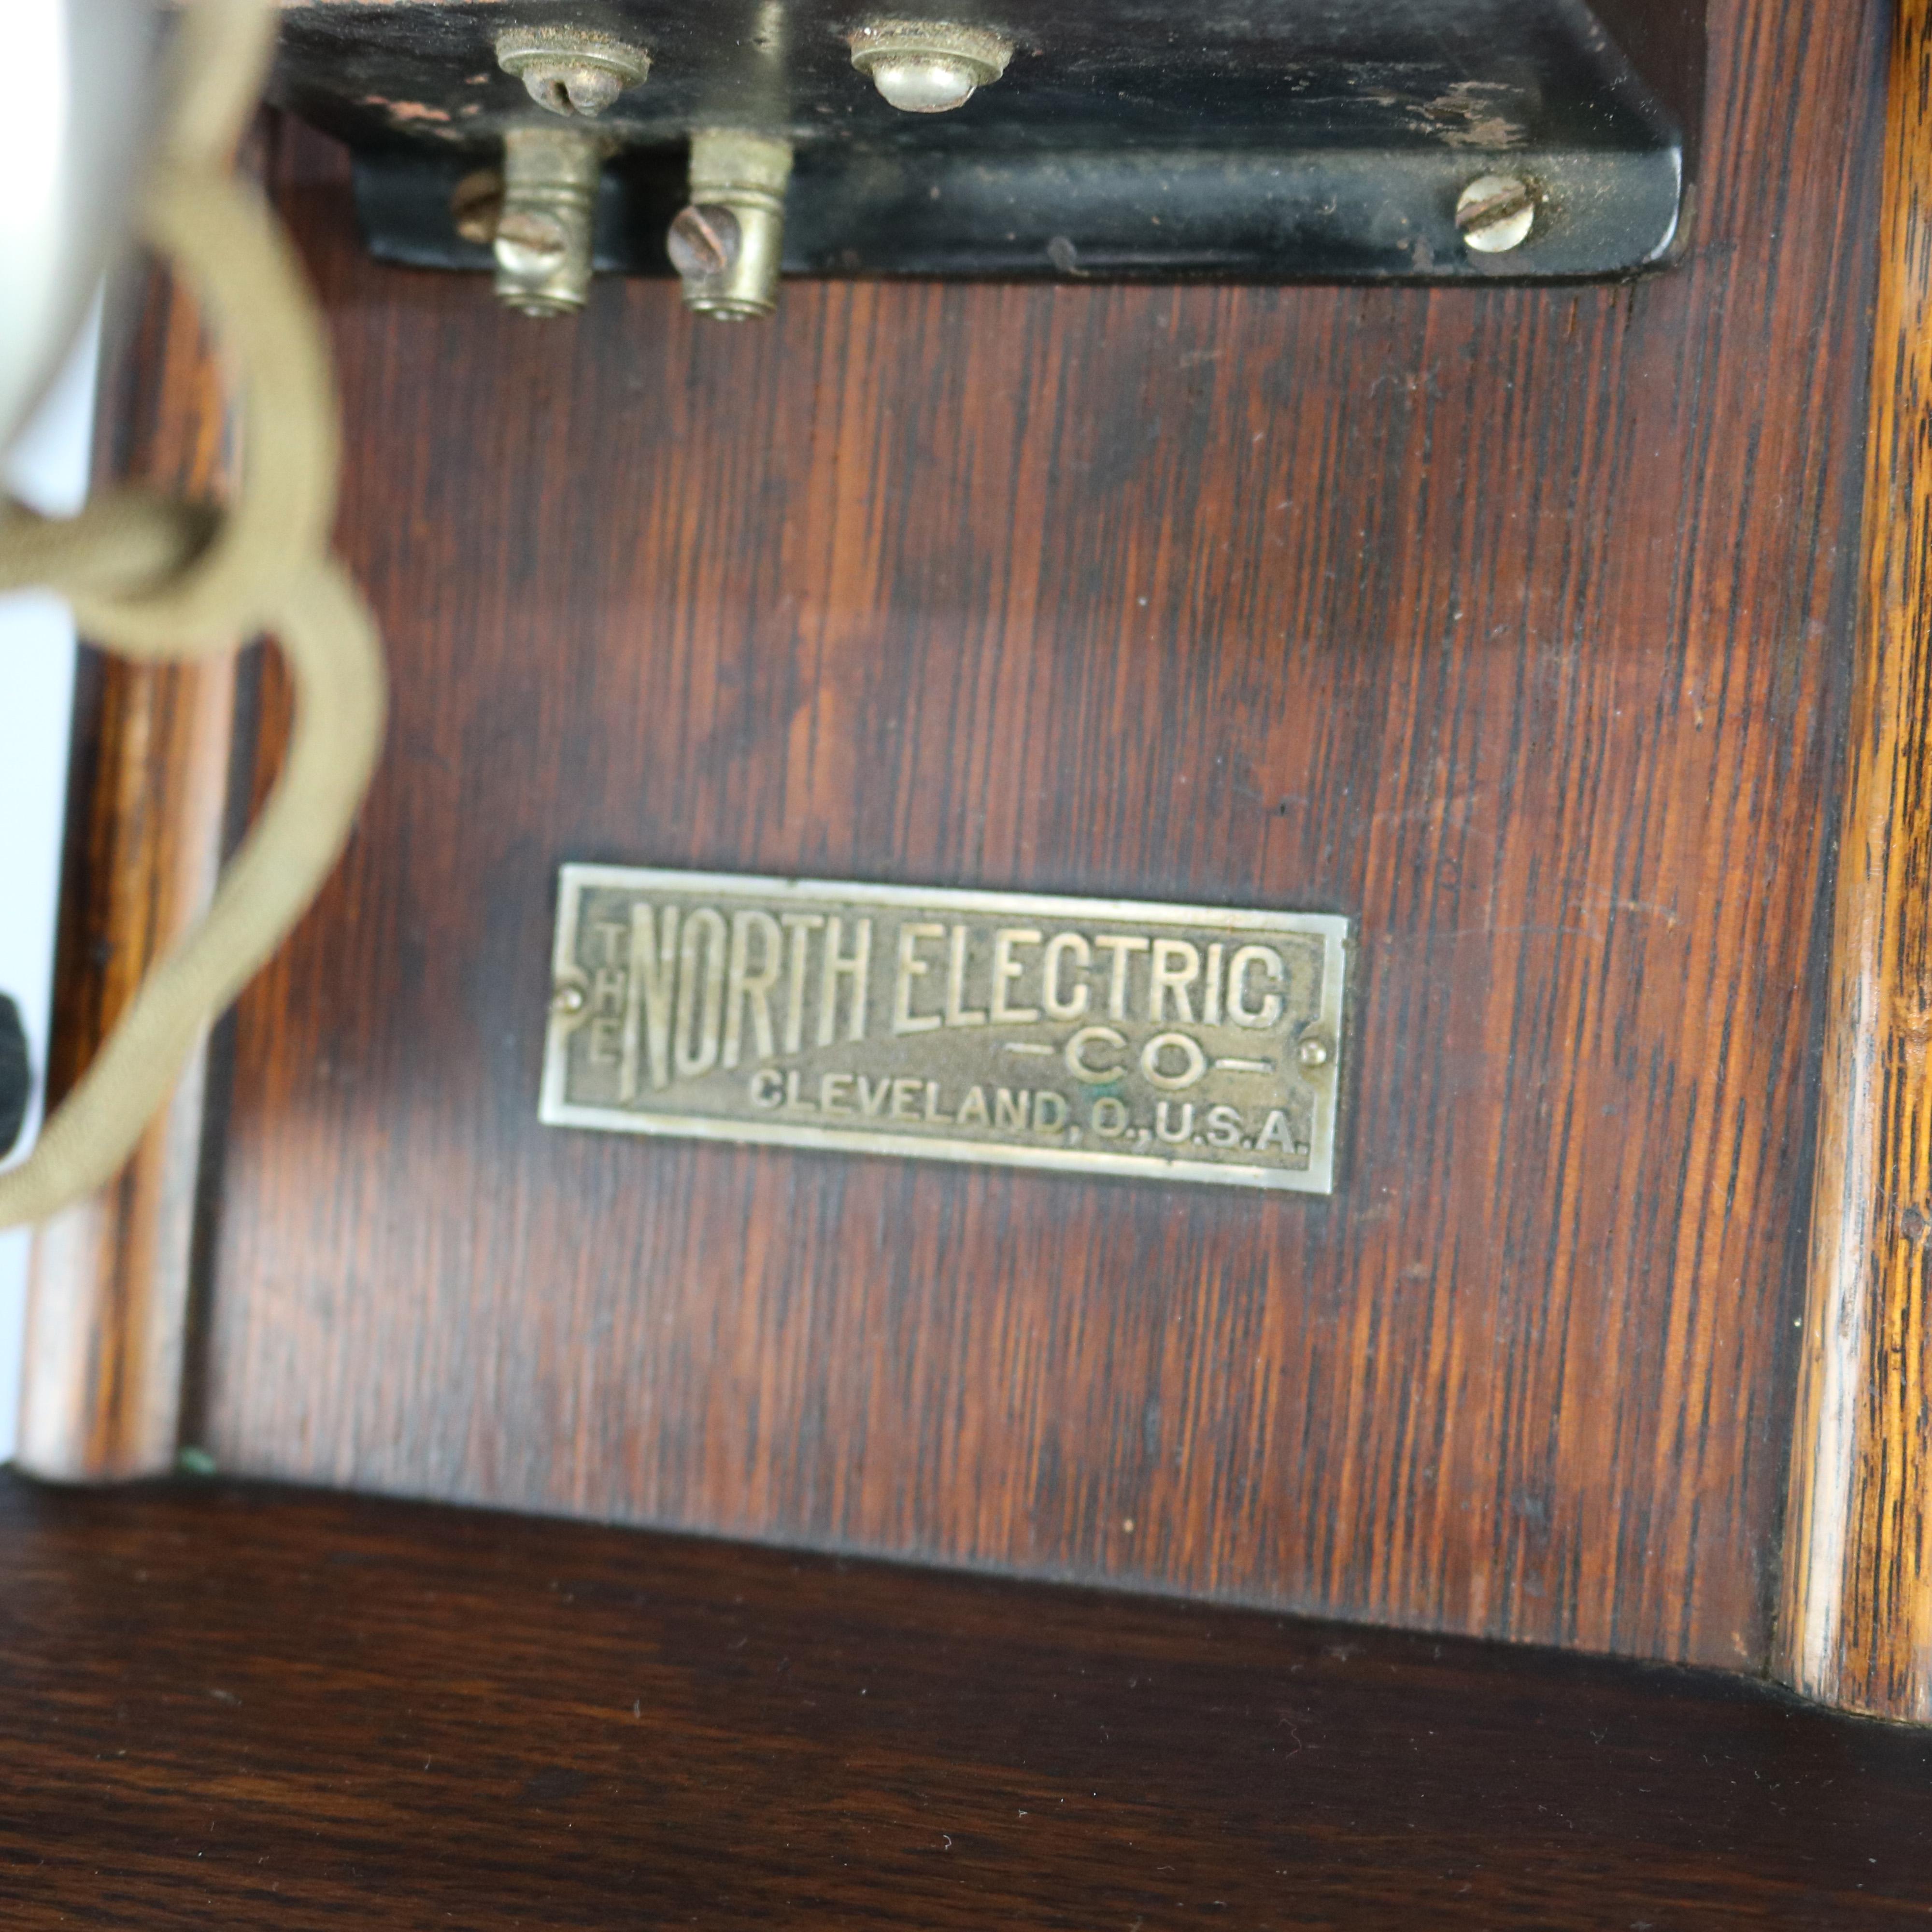 1890s telephone